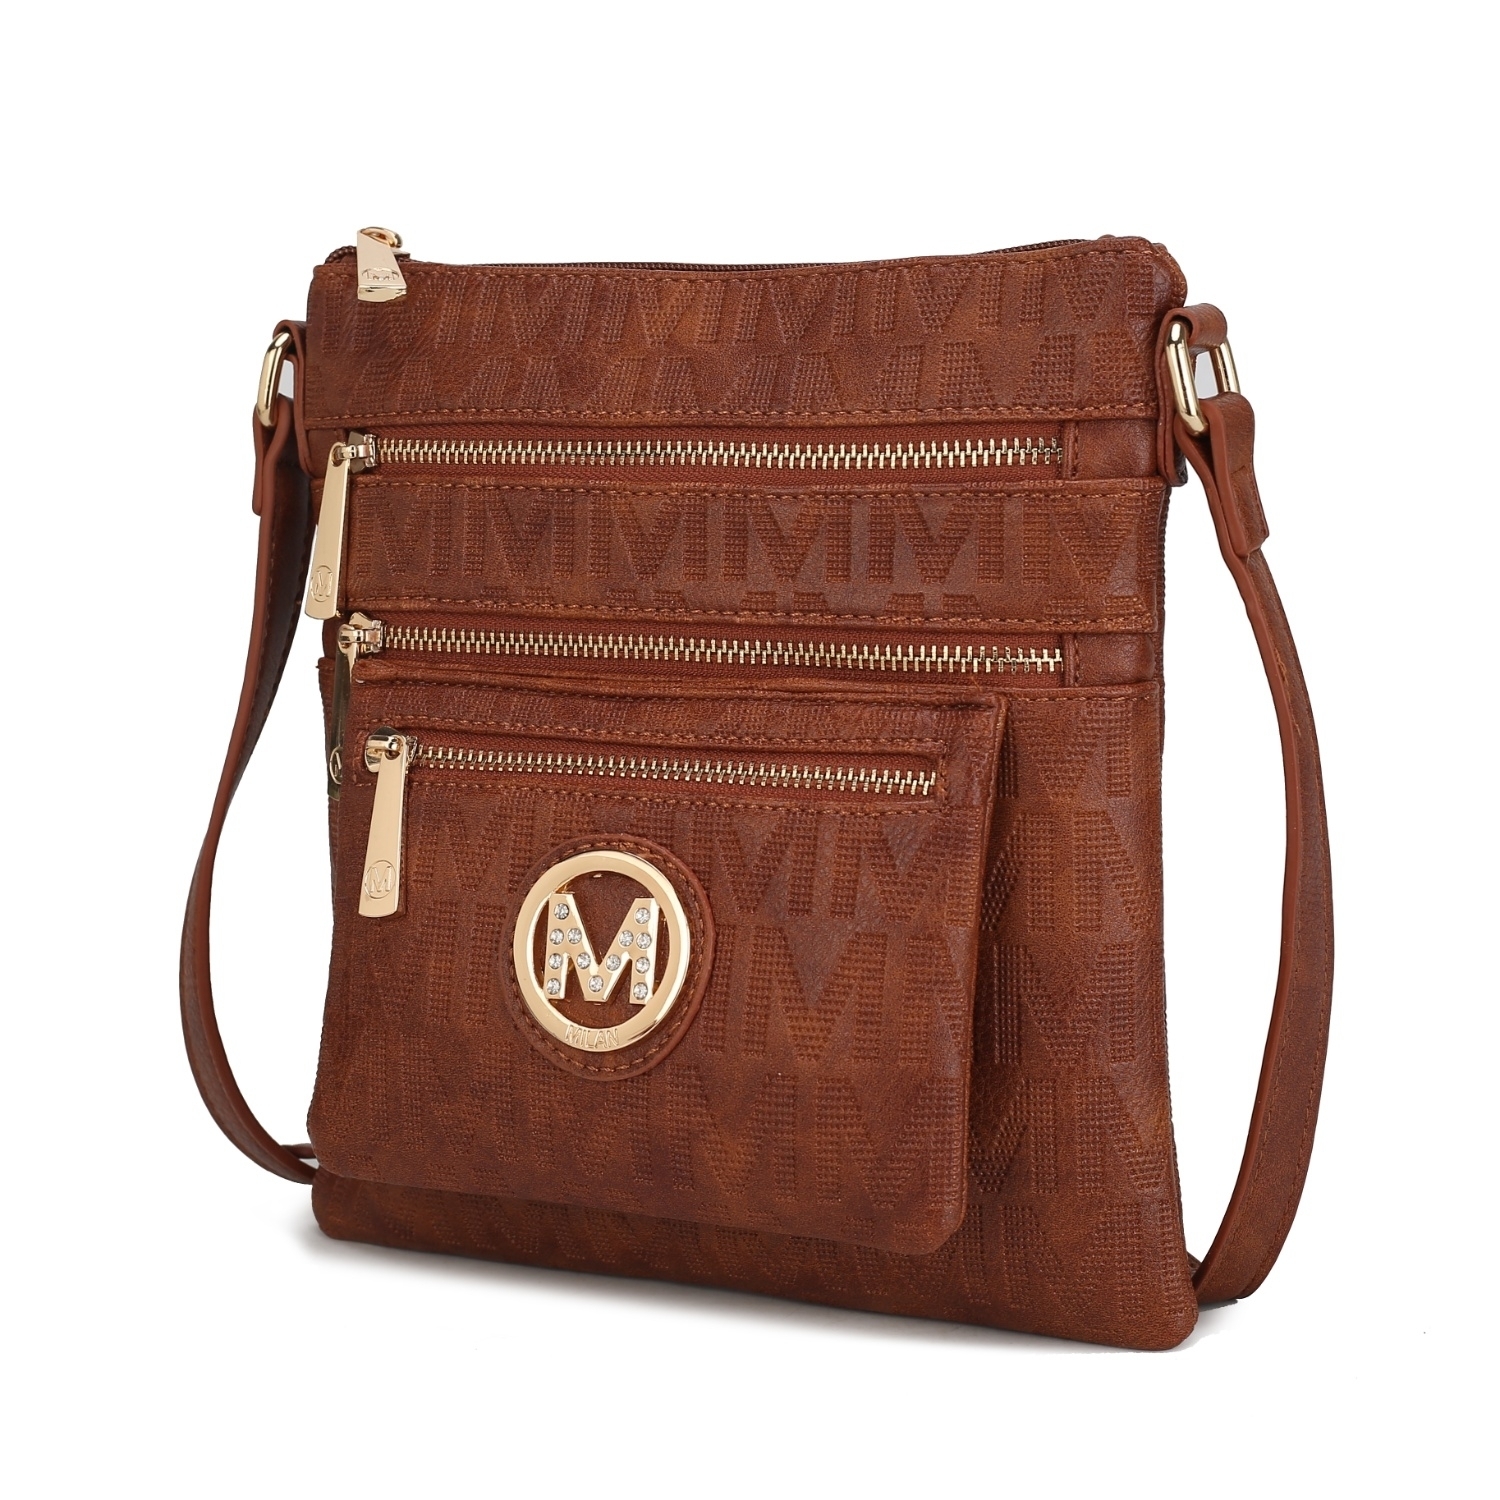 MKF Collection Jessy M Signature Crossbody Handbag By Mia K. - Camel